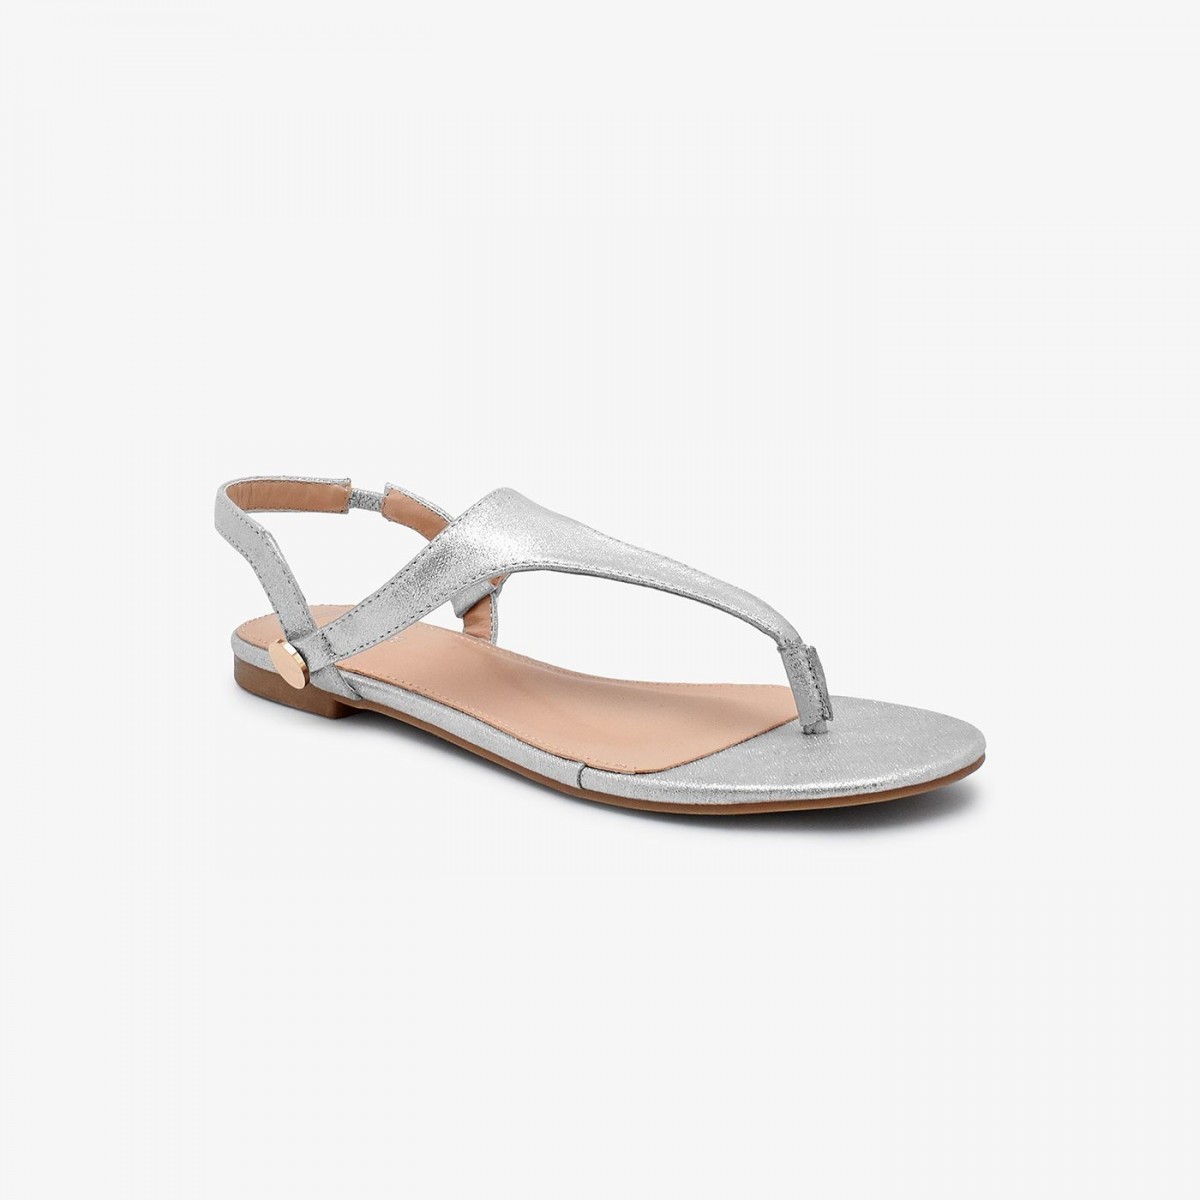 /2019/08/reeva-classic-ladies-sandal-rv-sd-0476-silver-image1.jpeg